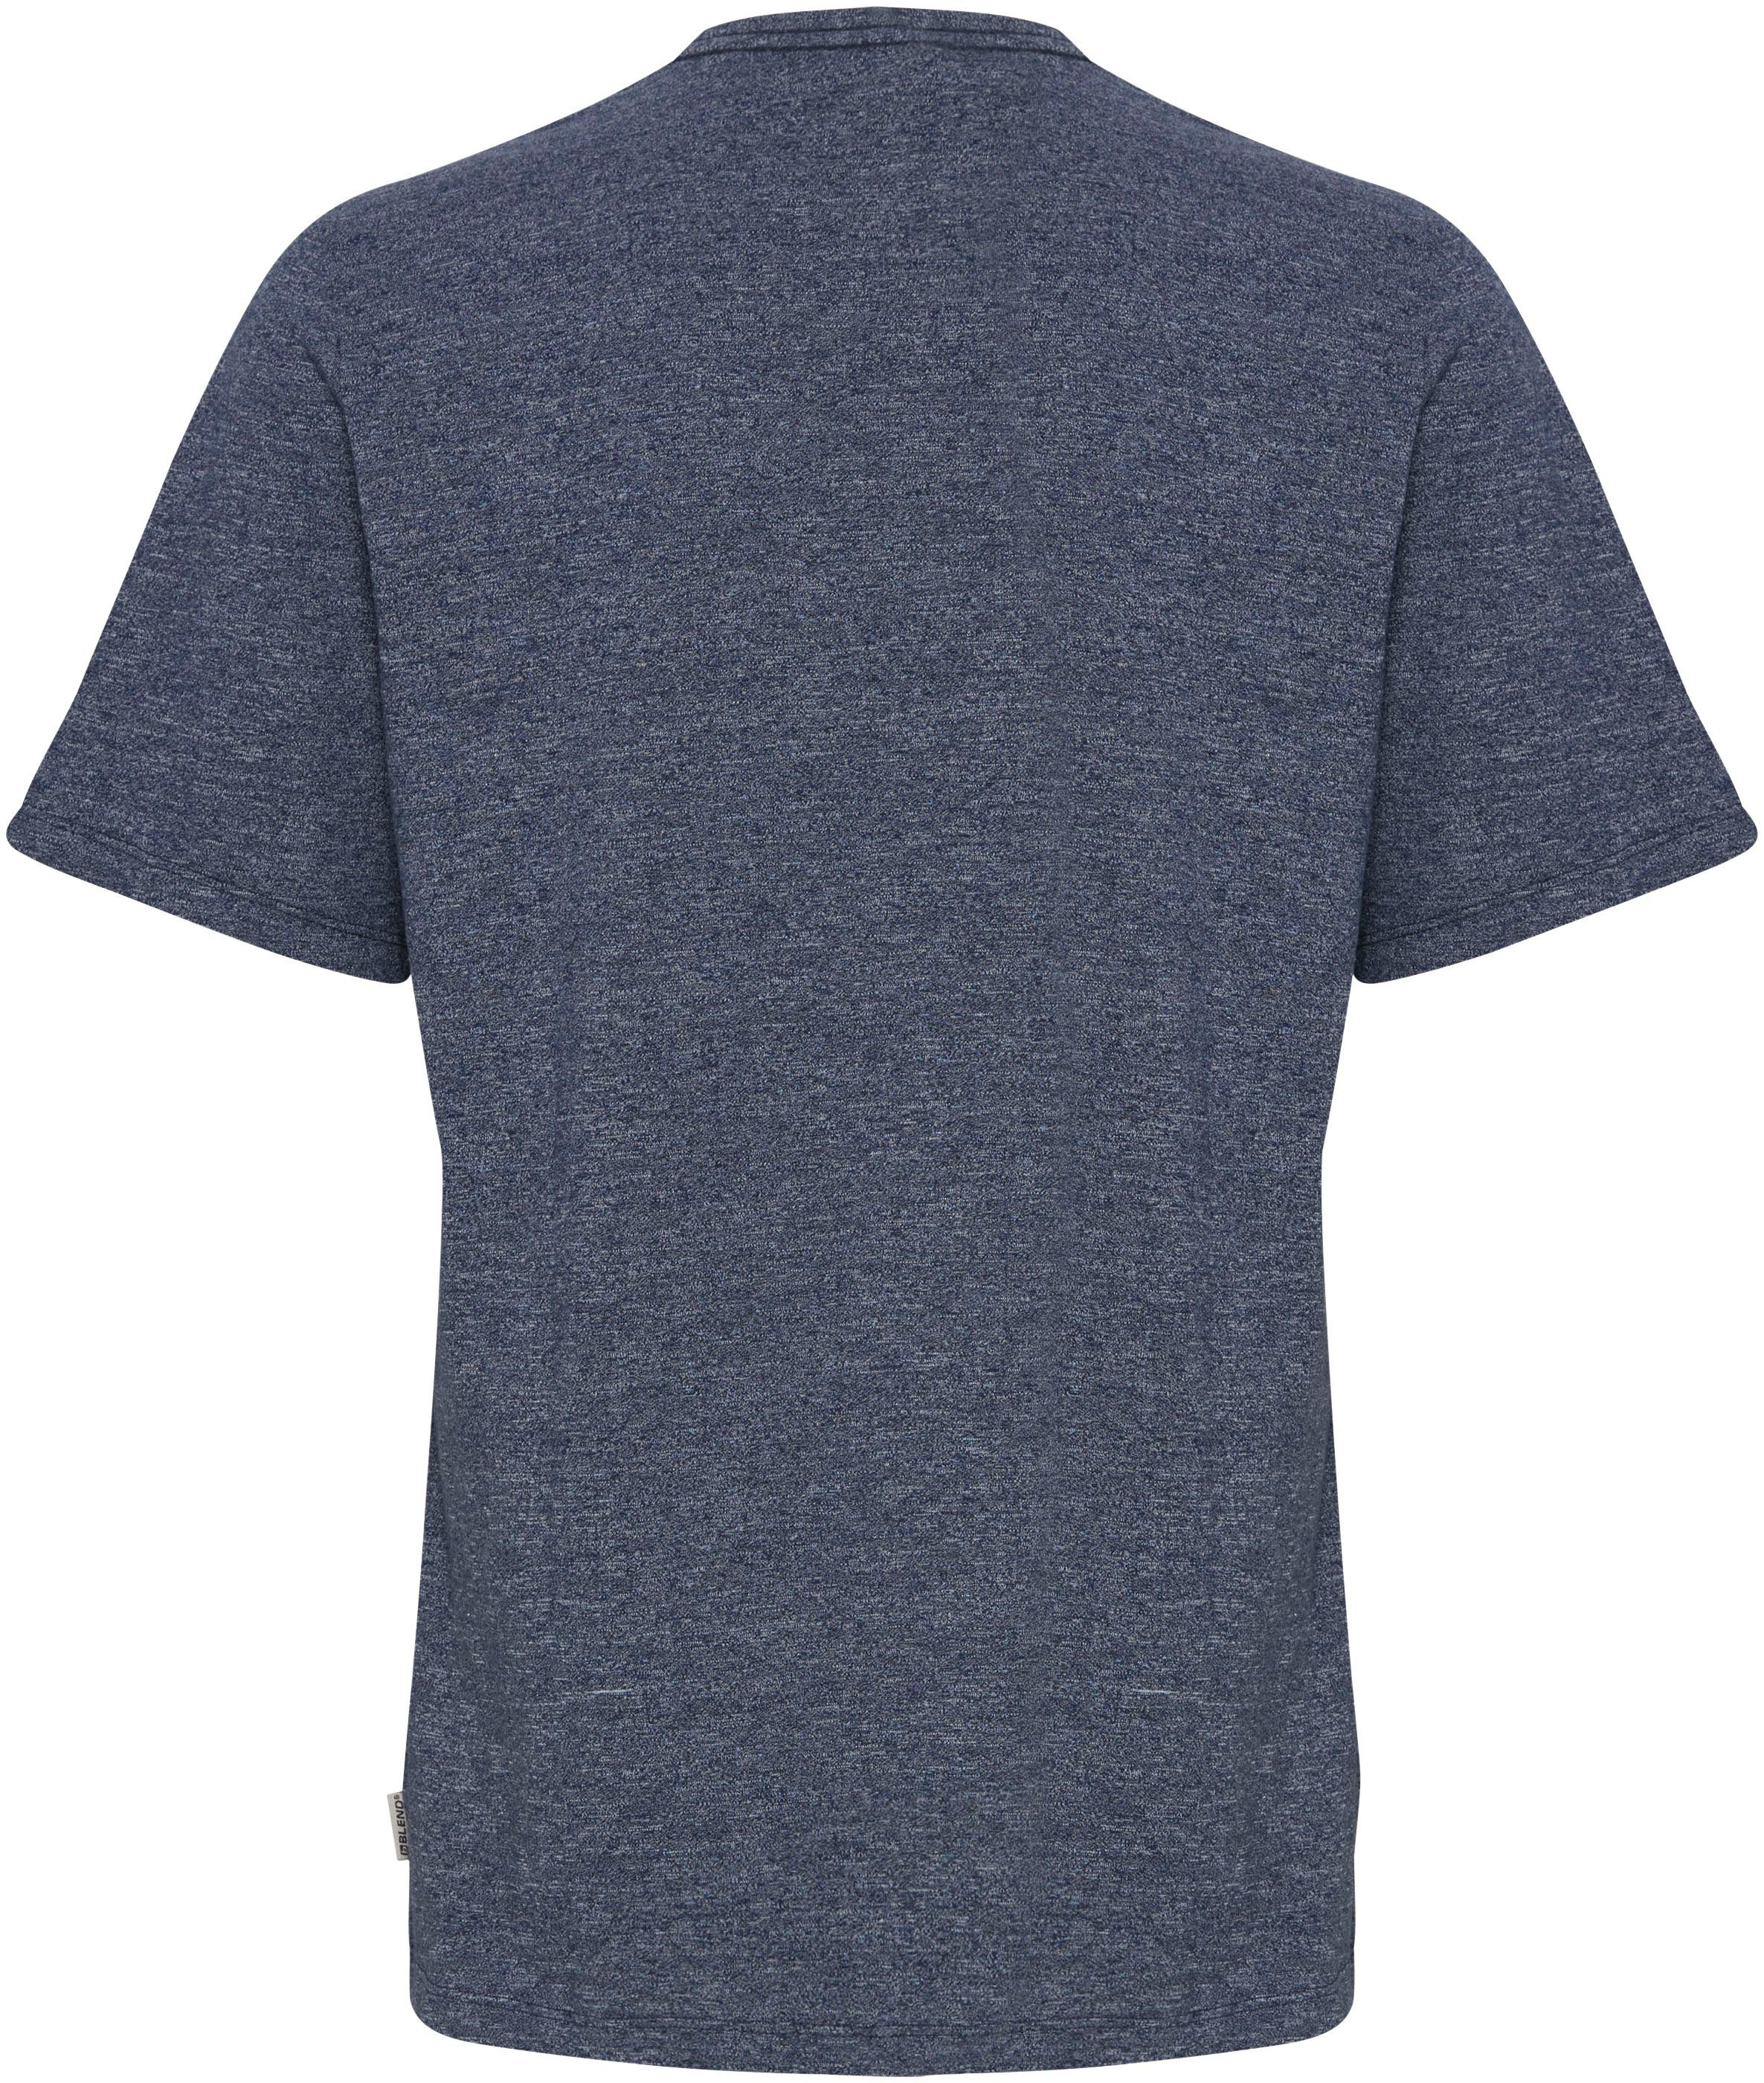 BL-T-shirt Produktname blue Blend BL20715298 Kurzarmshirt